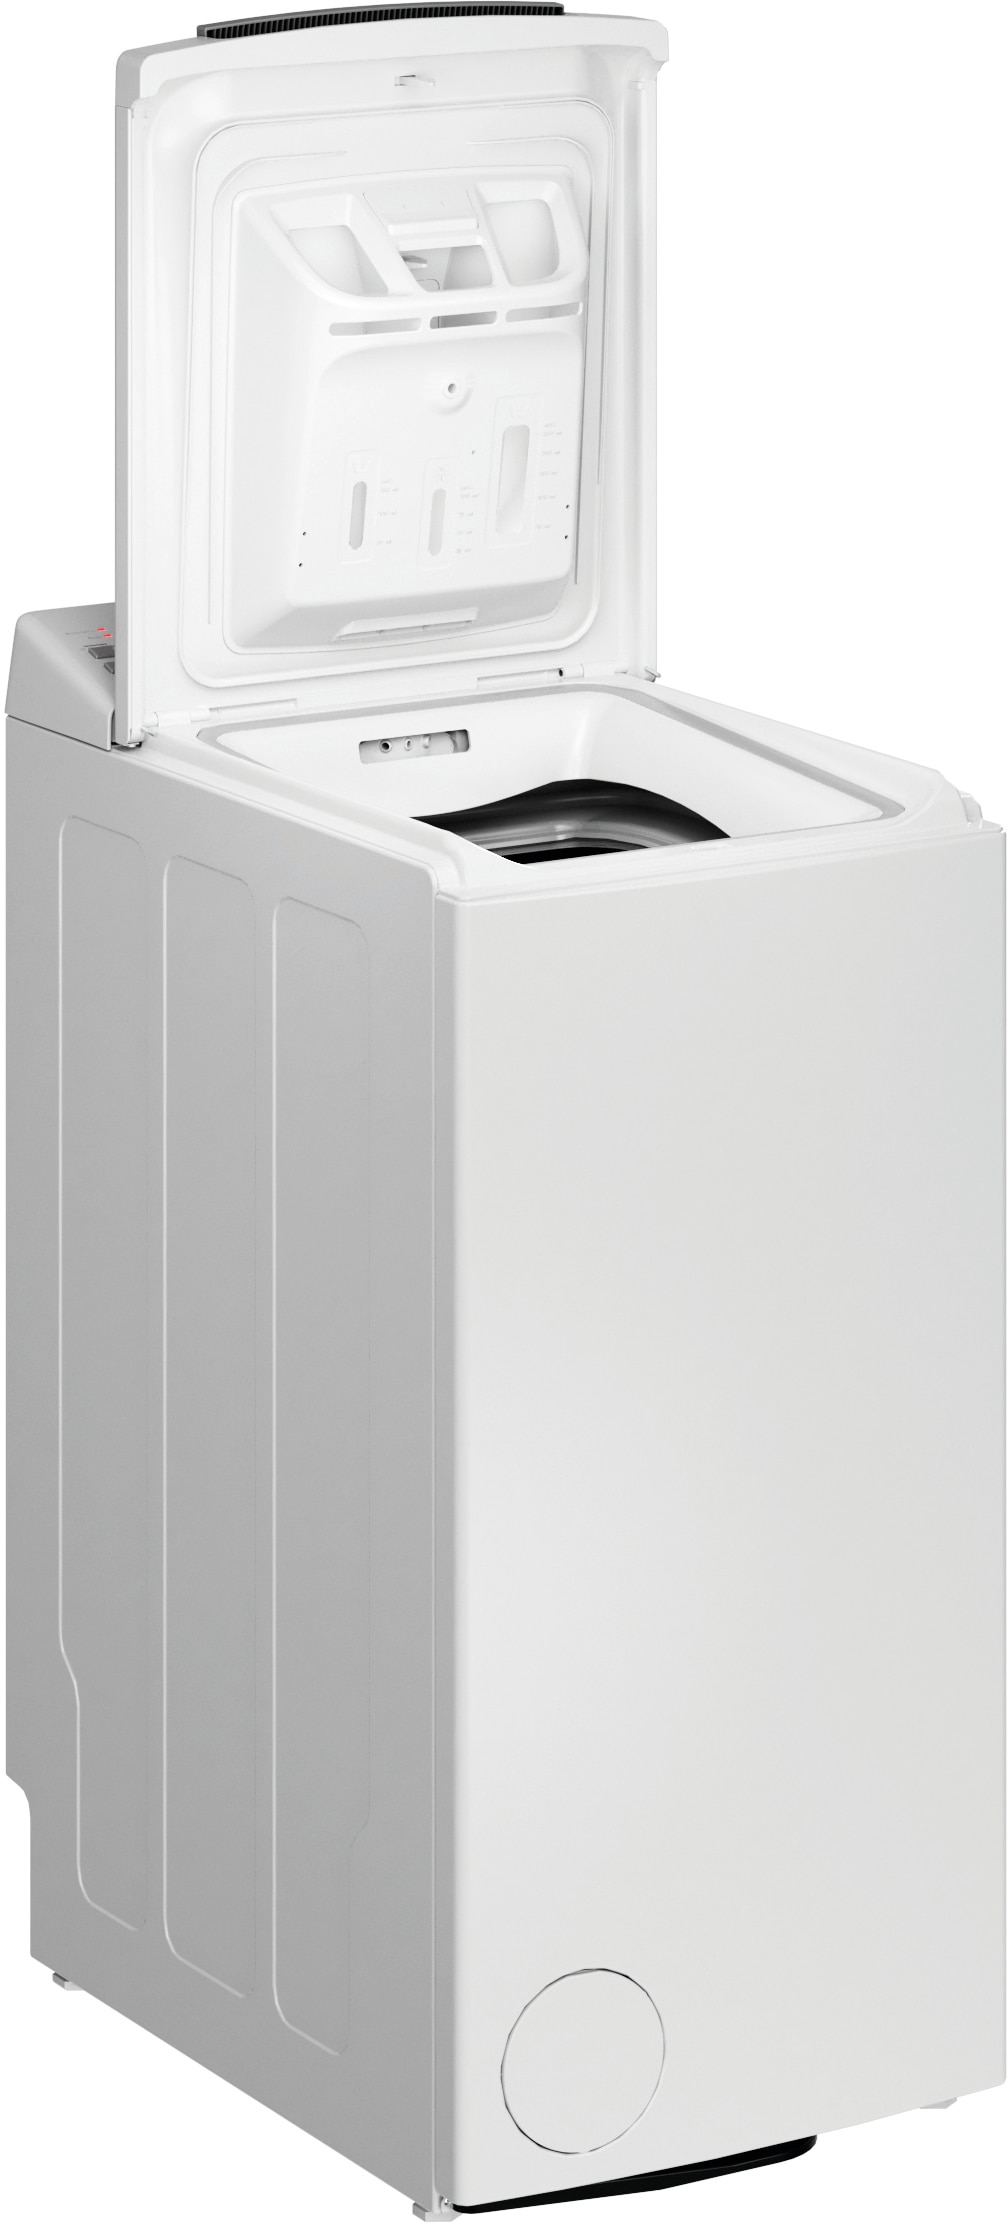 BAUKNECHT Waschmaschine Toplader »WMT Eco Shield 6523 C«, WMT Eco Shield  6523 C, 6,5 kg, 1200 U/min im Online-Shop bestellen | Waschmaschinen